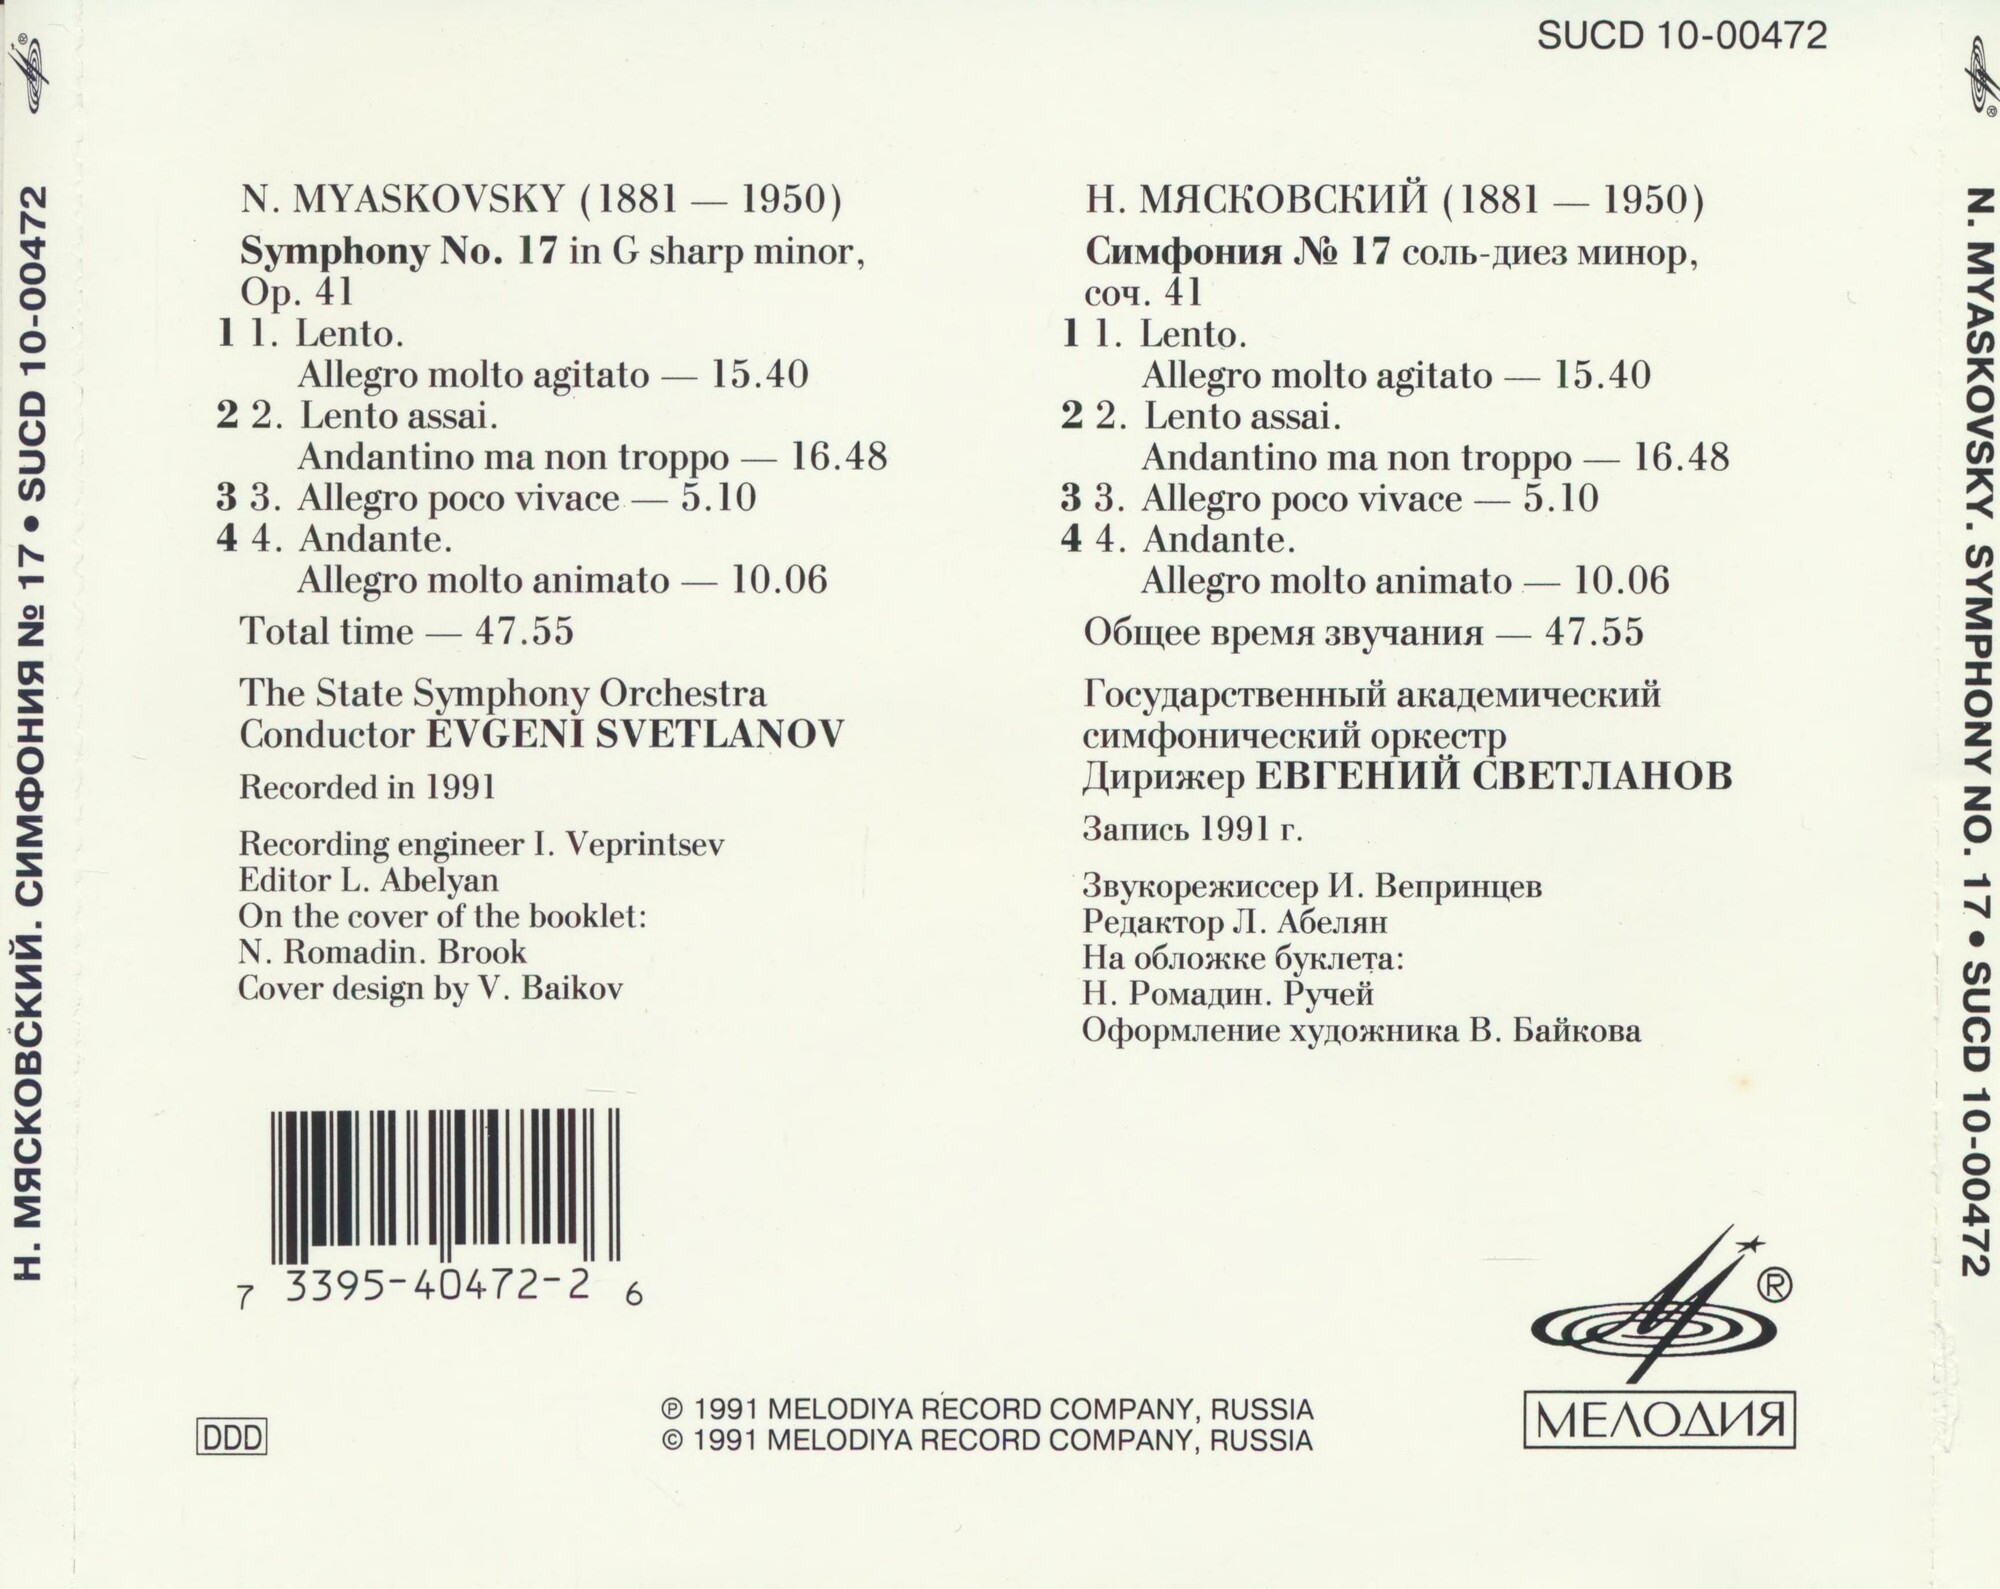 Н. МЯСКОВСКИЙ (1881-1950): Симфония №17 соль-диез минор, соч. 41